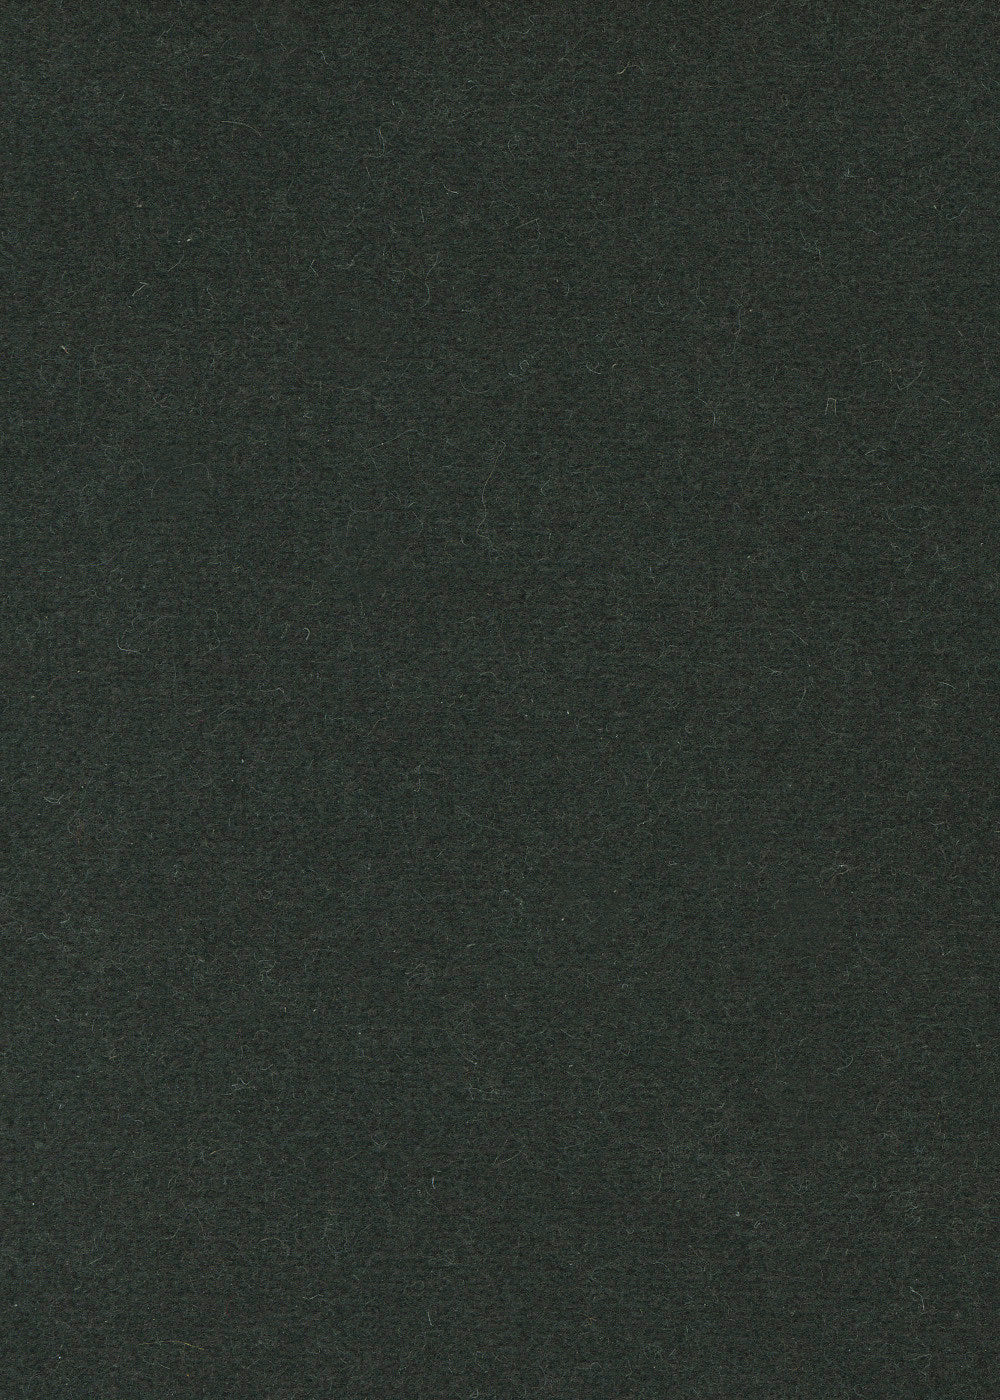 dark grey-blue cashmere velvet fabric for upholstery